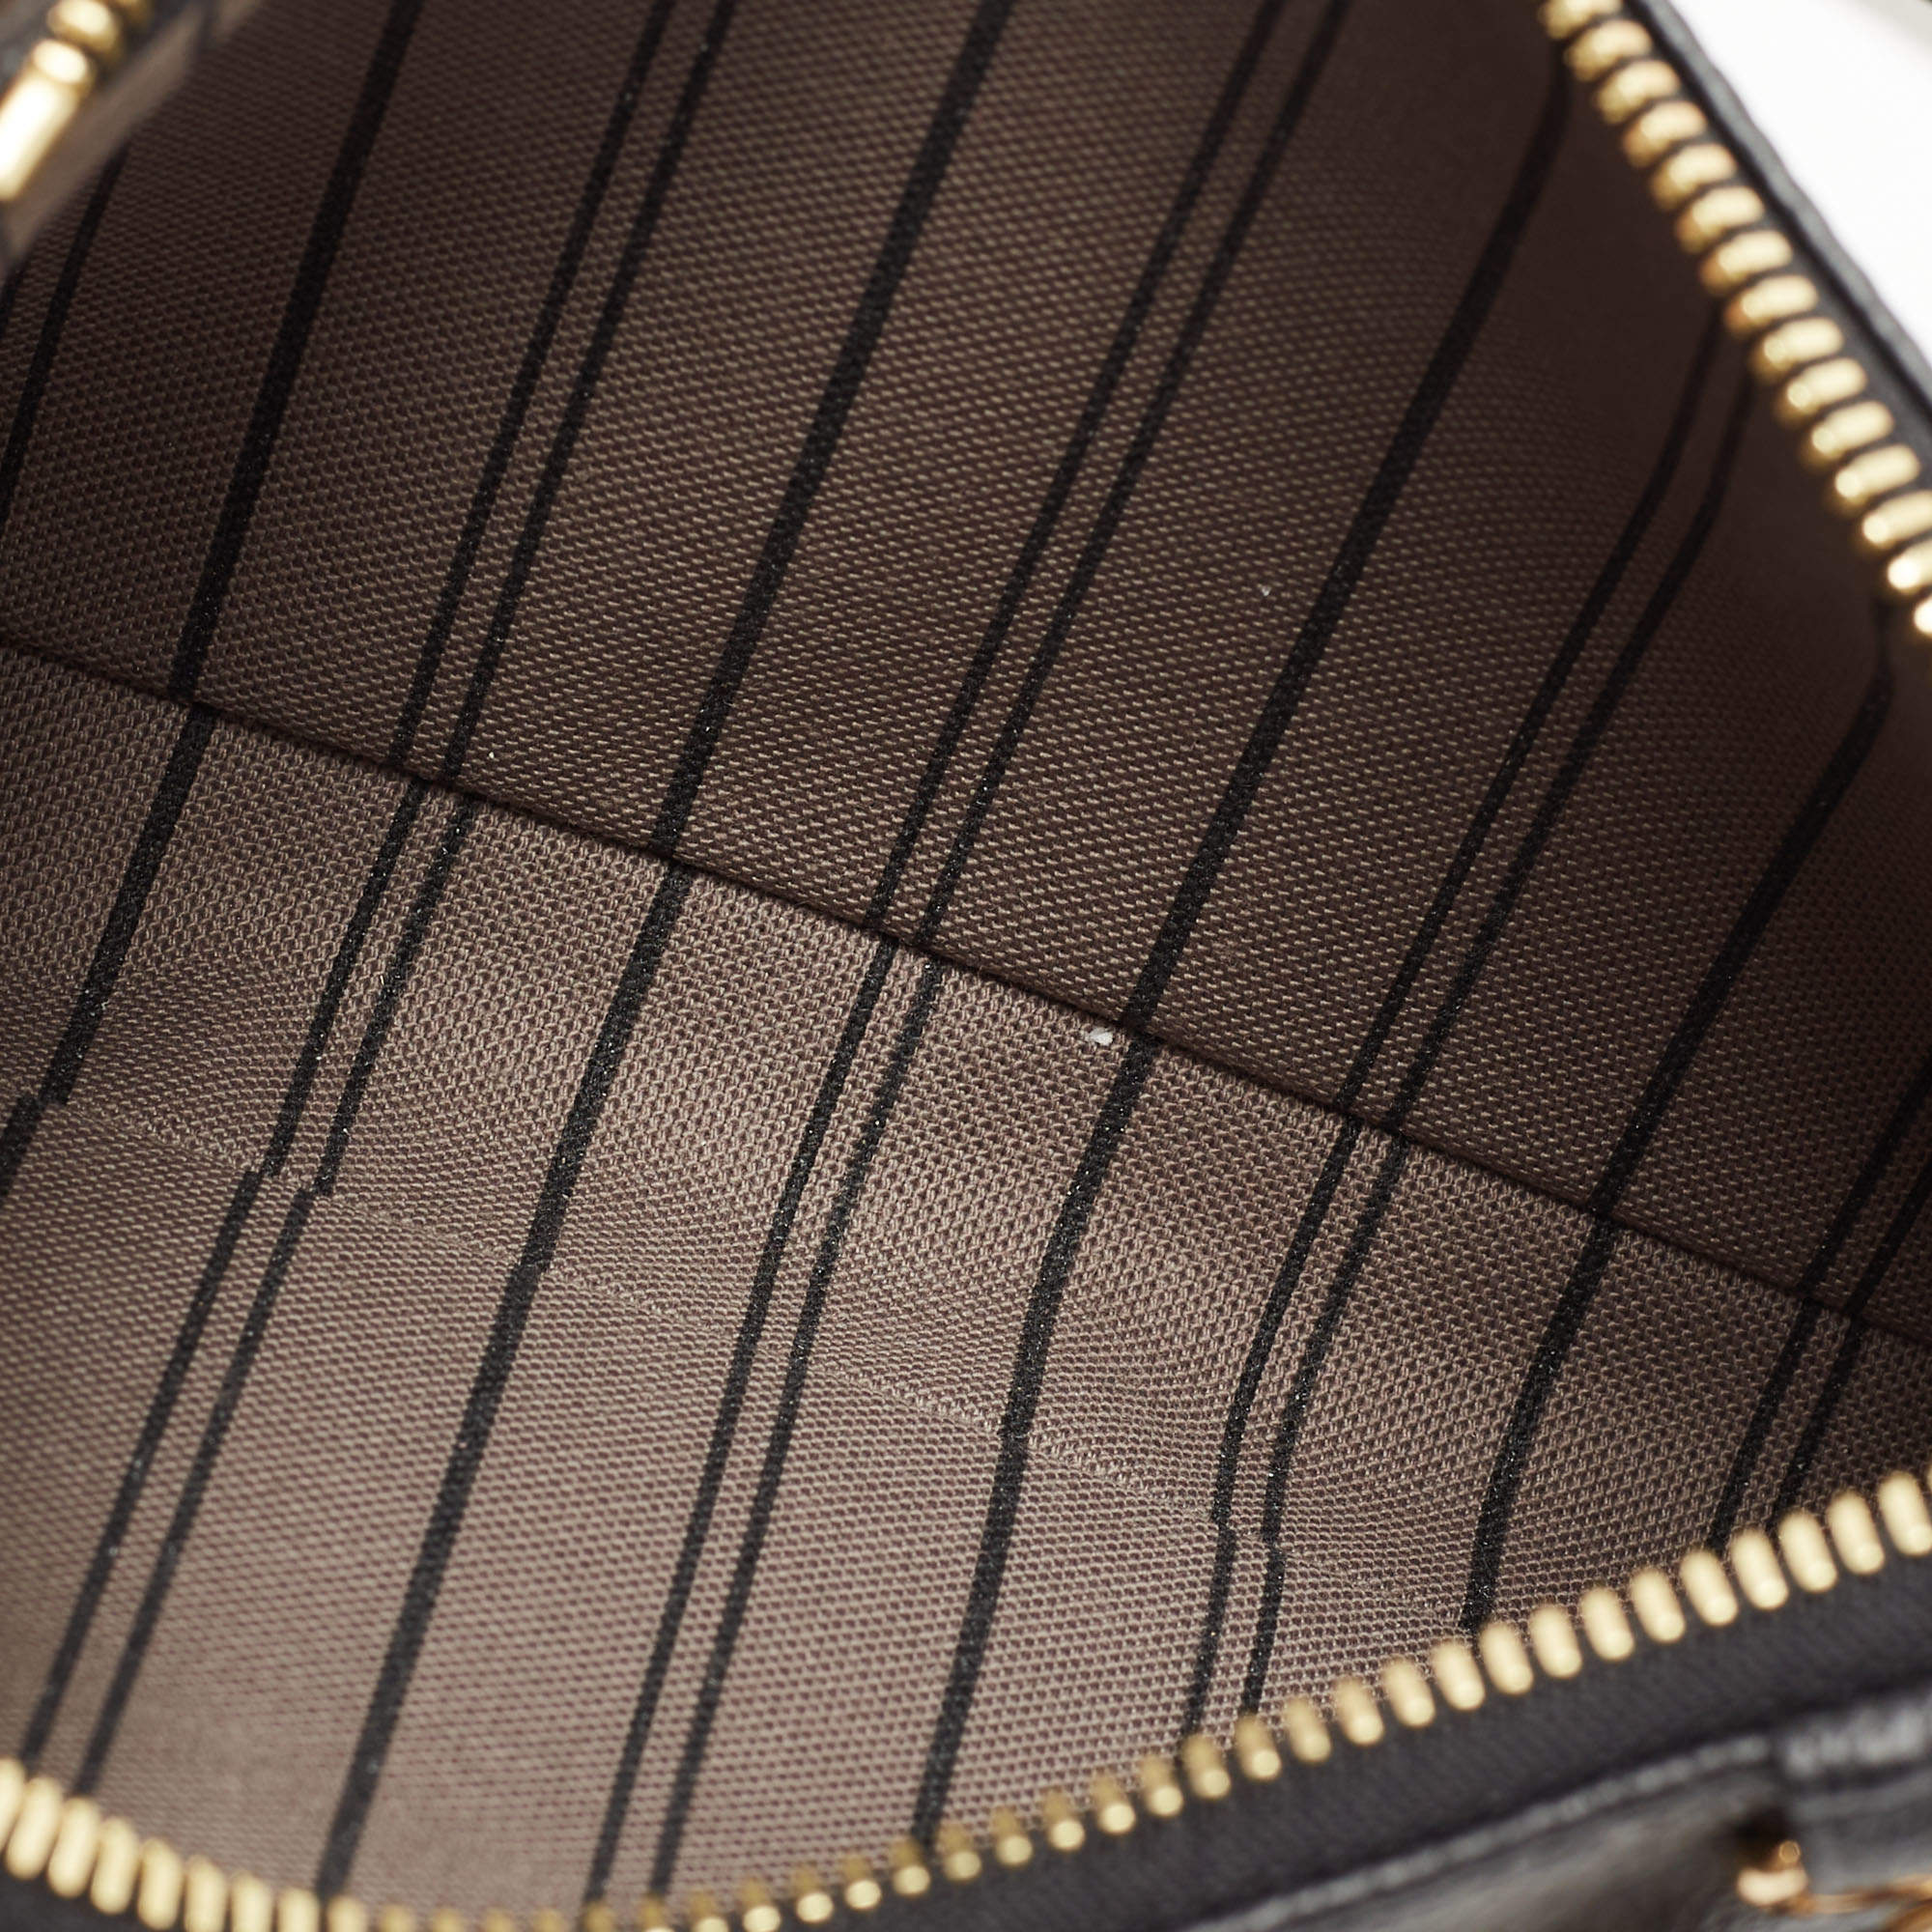 Easy Pouch #louisvuittonlover #empriente #minibag #louisvuitton